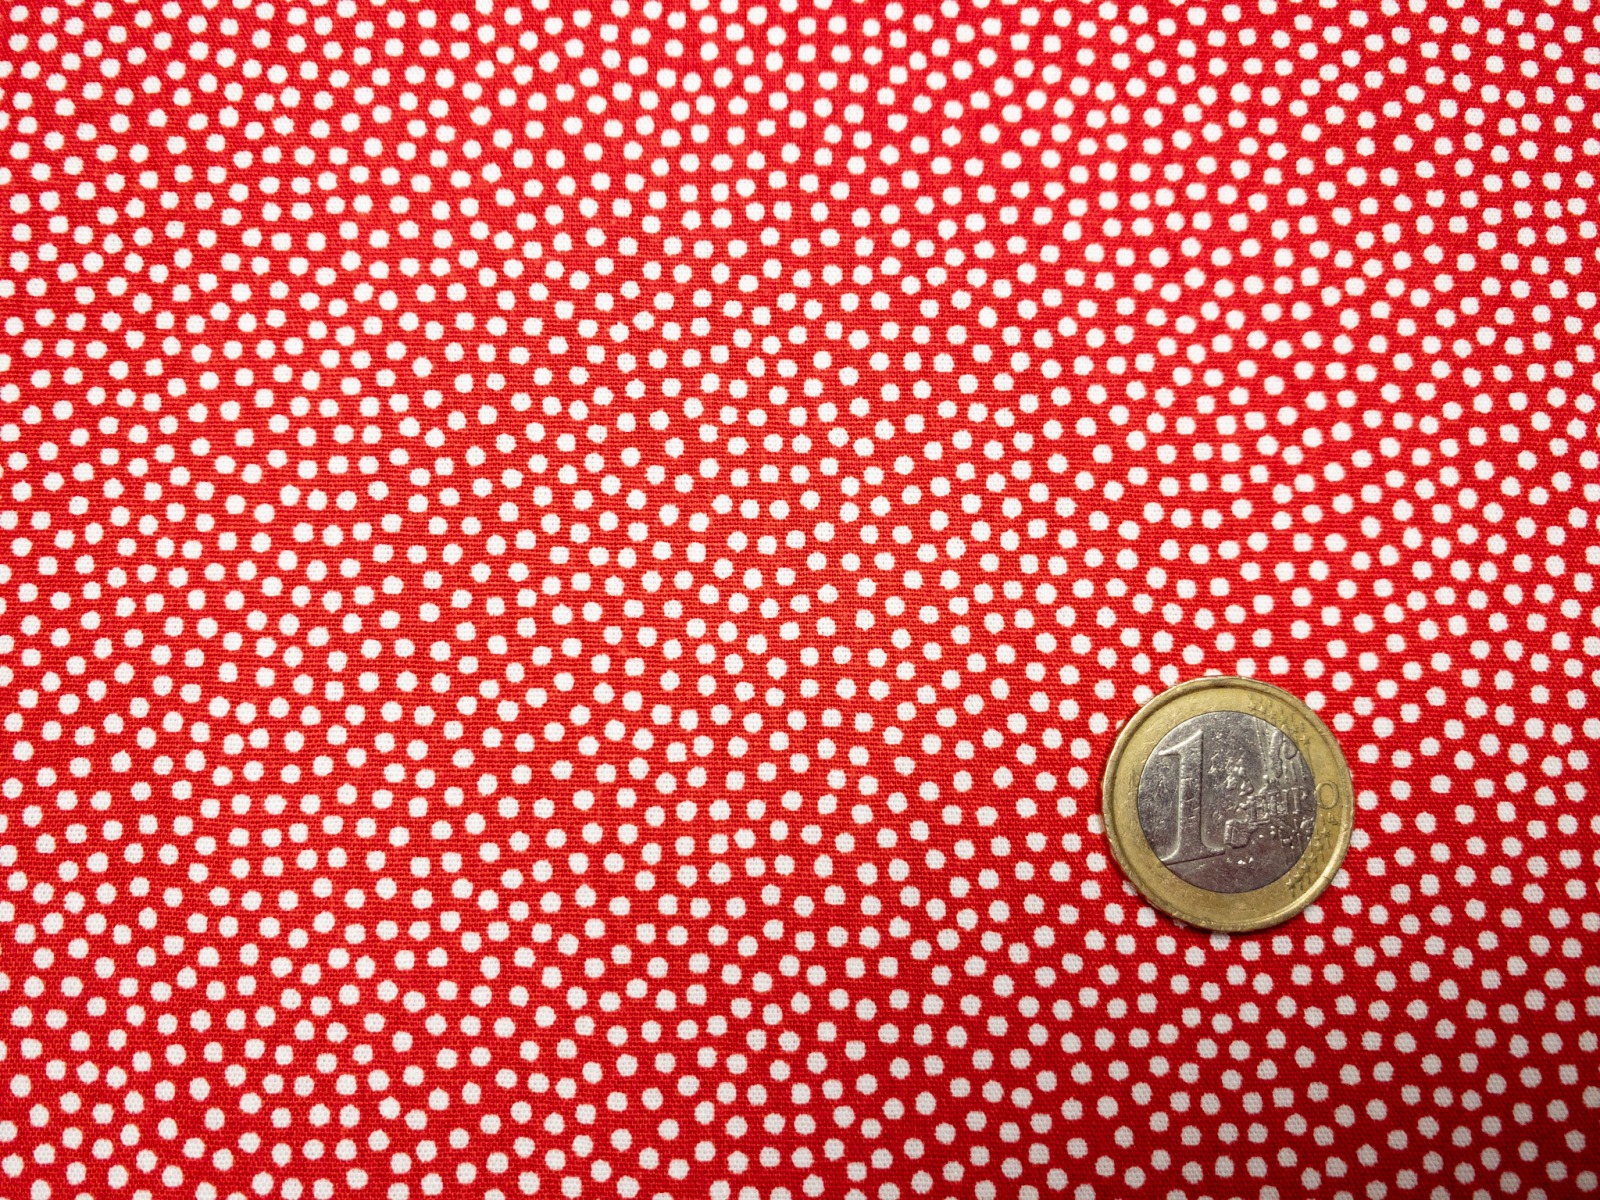 Baumwollwebware - unregelmäßige Punkte - rot/weiß - 100% Baumwolle - Dotty - Swafing 2